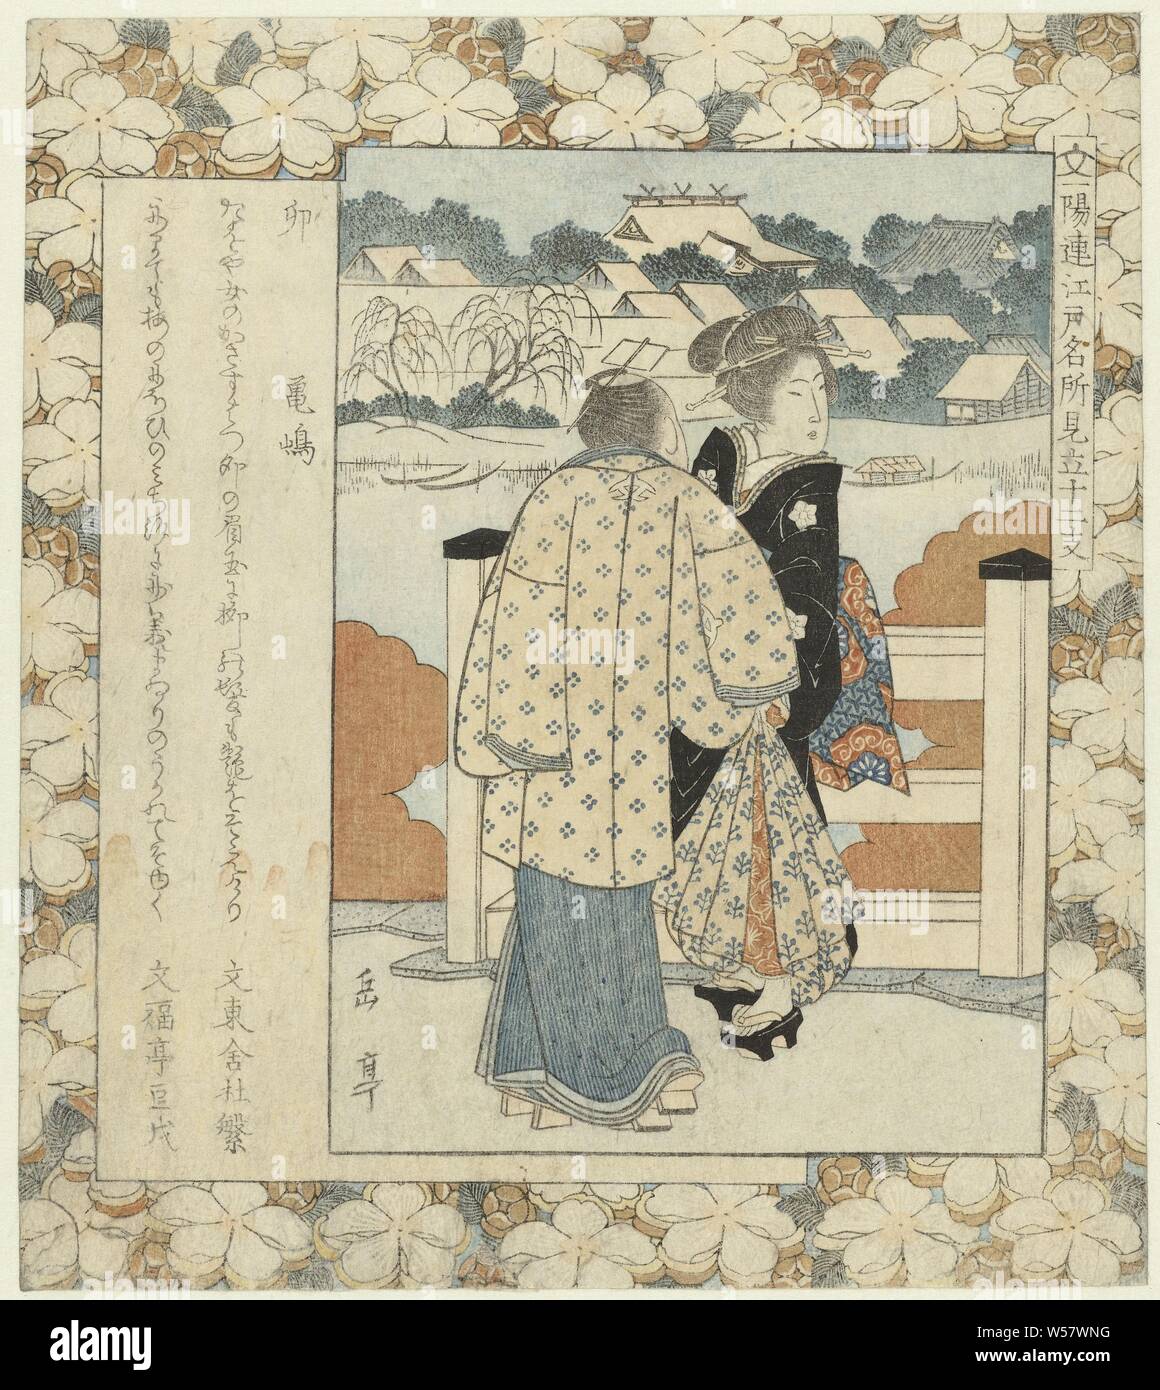 Haas : U-Kamejima Kamejima (titre sur l'objet) des lieux célèbres d'Edo et les douze signes du zodiaque (titre de la série) Edo meisho mitate jûnishi (titre de la série sur l'objet), un homme et une femme parlant sur un pont de Kamejima, un morceau de terre dans la partie sud de Nihonbashi. La rivière Sumida peut être vu dans l'arrière-plan. Avec deux poèmes, les plantes, la végétation (fleurs, fleurs, fleurs), Yashima Gakutei (mentionné sur l'objet), le Japon, l'c. 1827, gravure sur bois, papier couleur, h 211 mm × W 186 mm Banque D'Images